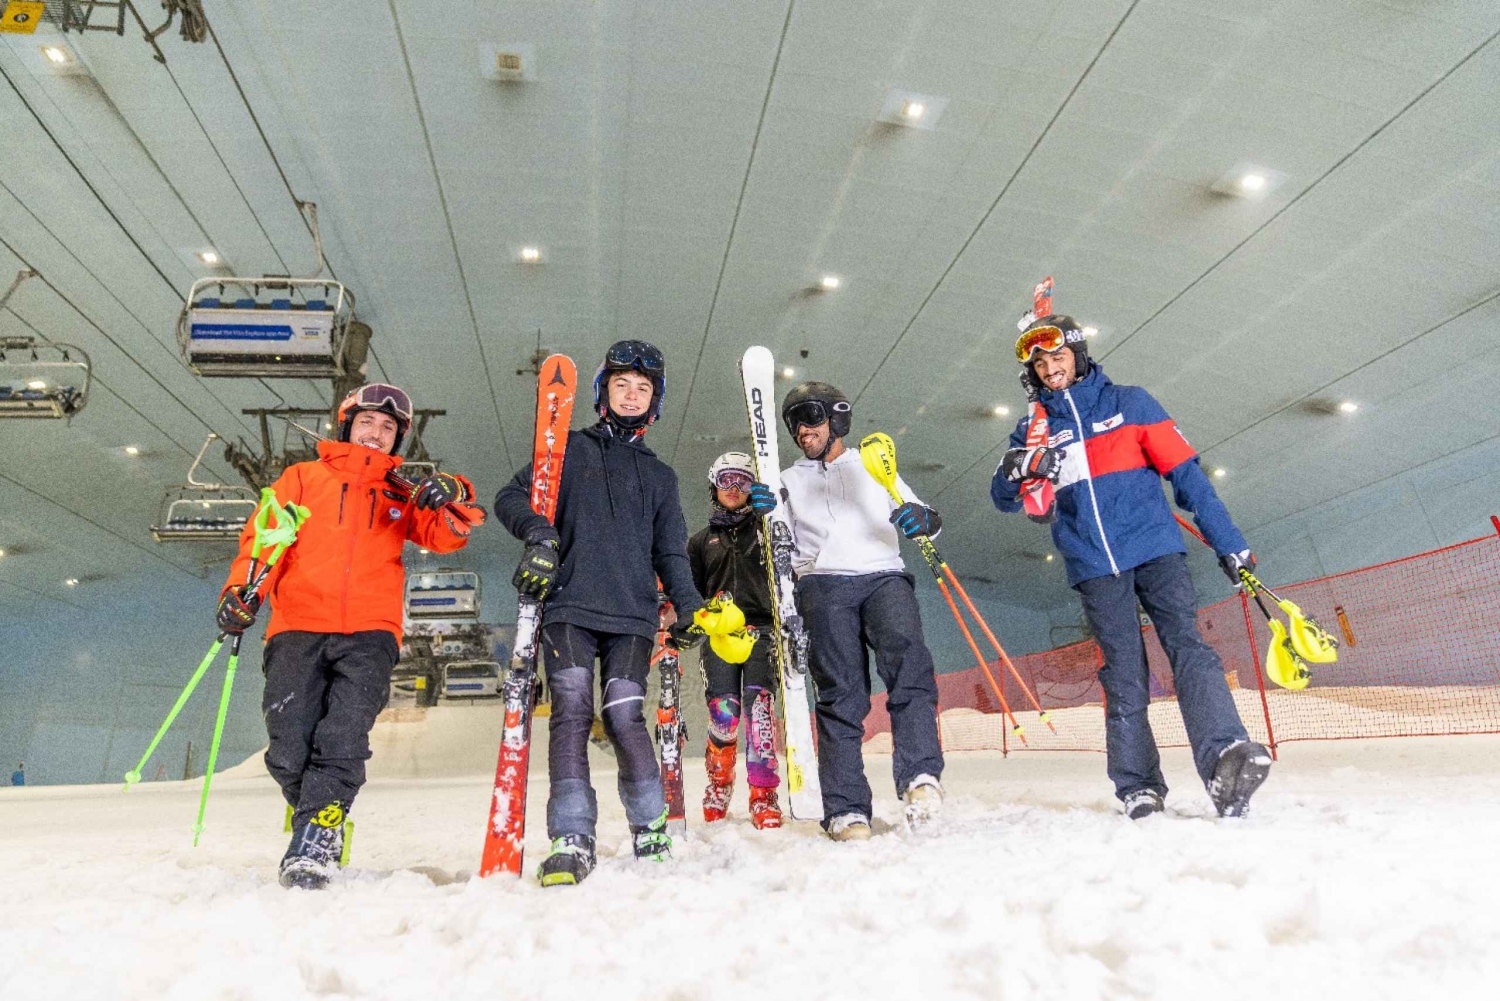 Dubai: Sesión en pista de 2 horas o de un día entero en Ski Dubai